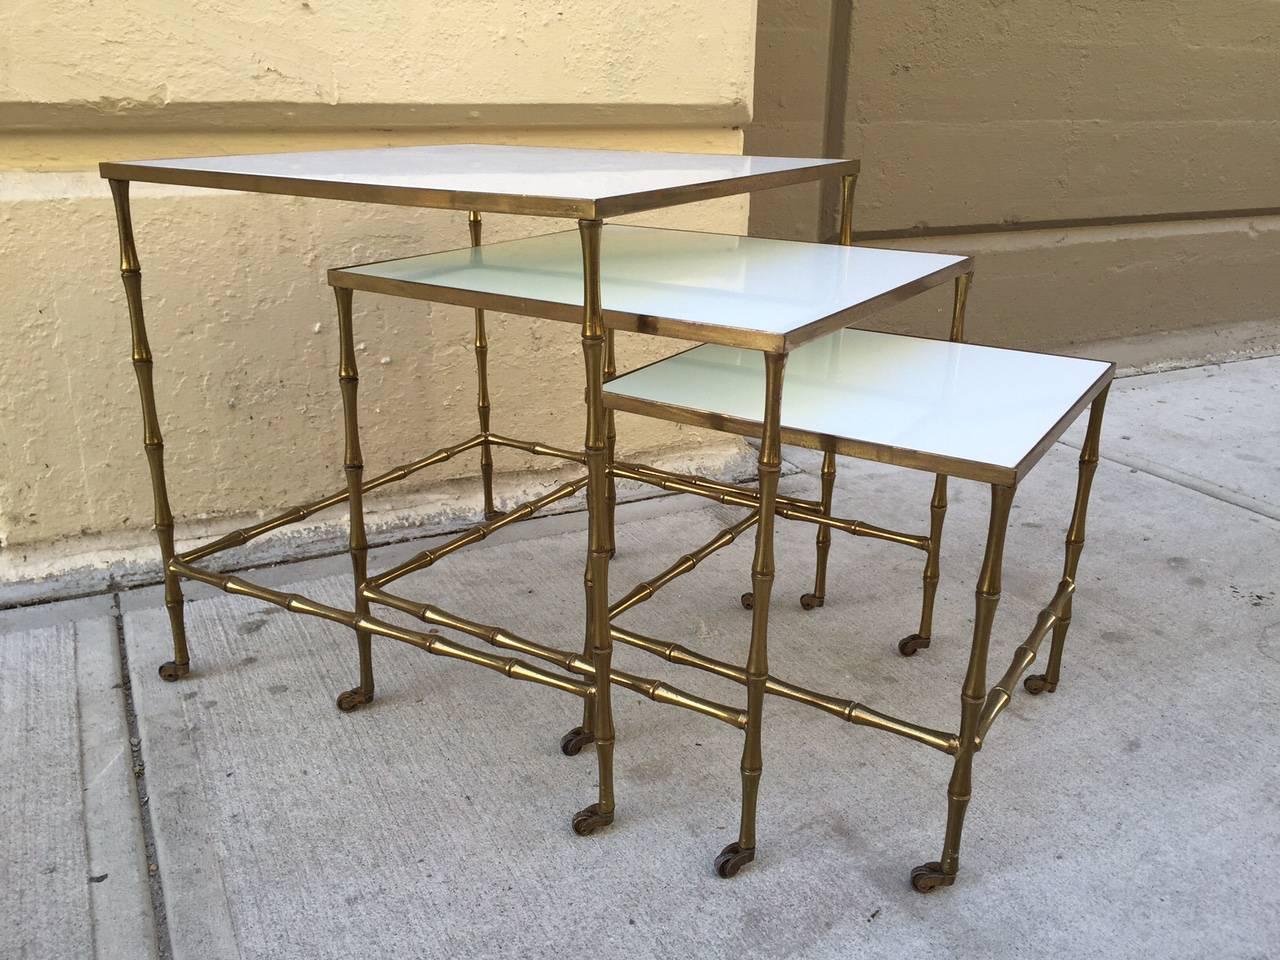 Tables gigognes en bronze par Maison Bague`s. Les tables ont un cadre en faux bambou de couleur bronze sur roulettes et des plateaux en verre au lait.
La table la plus grande mesure : 19